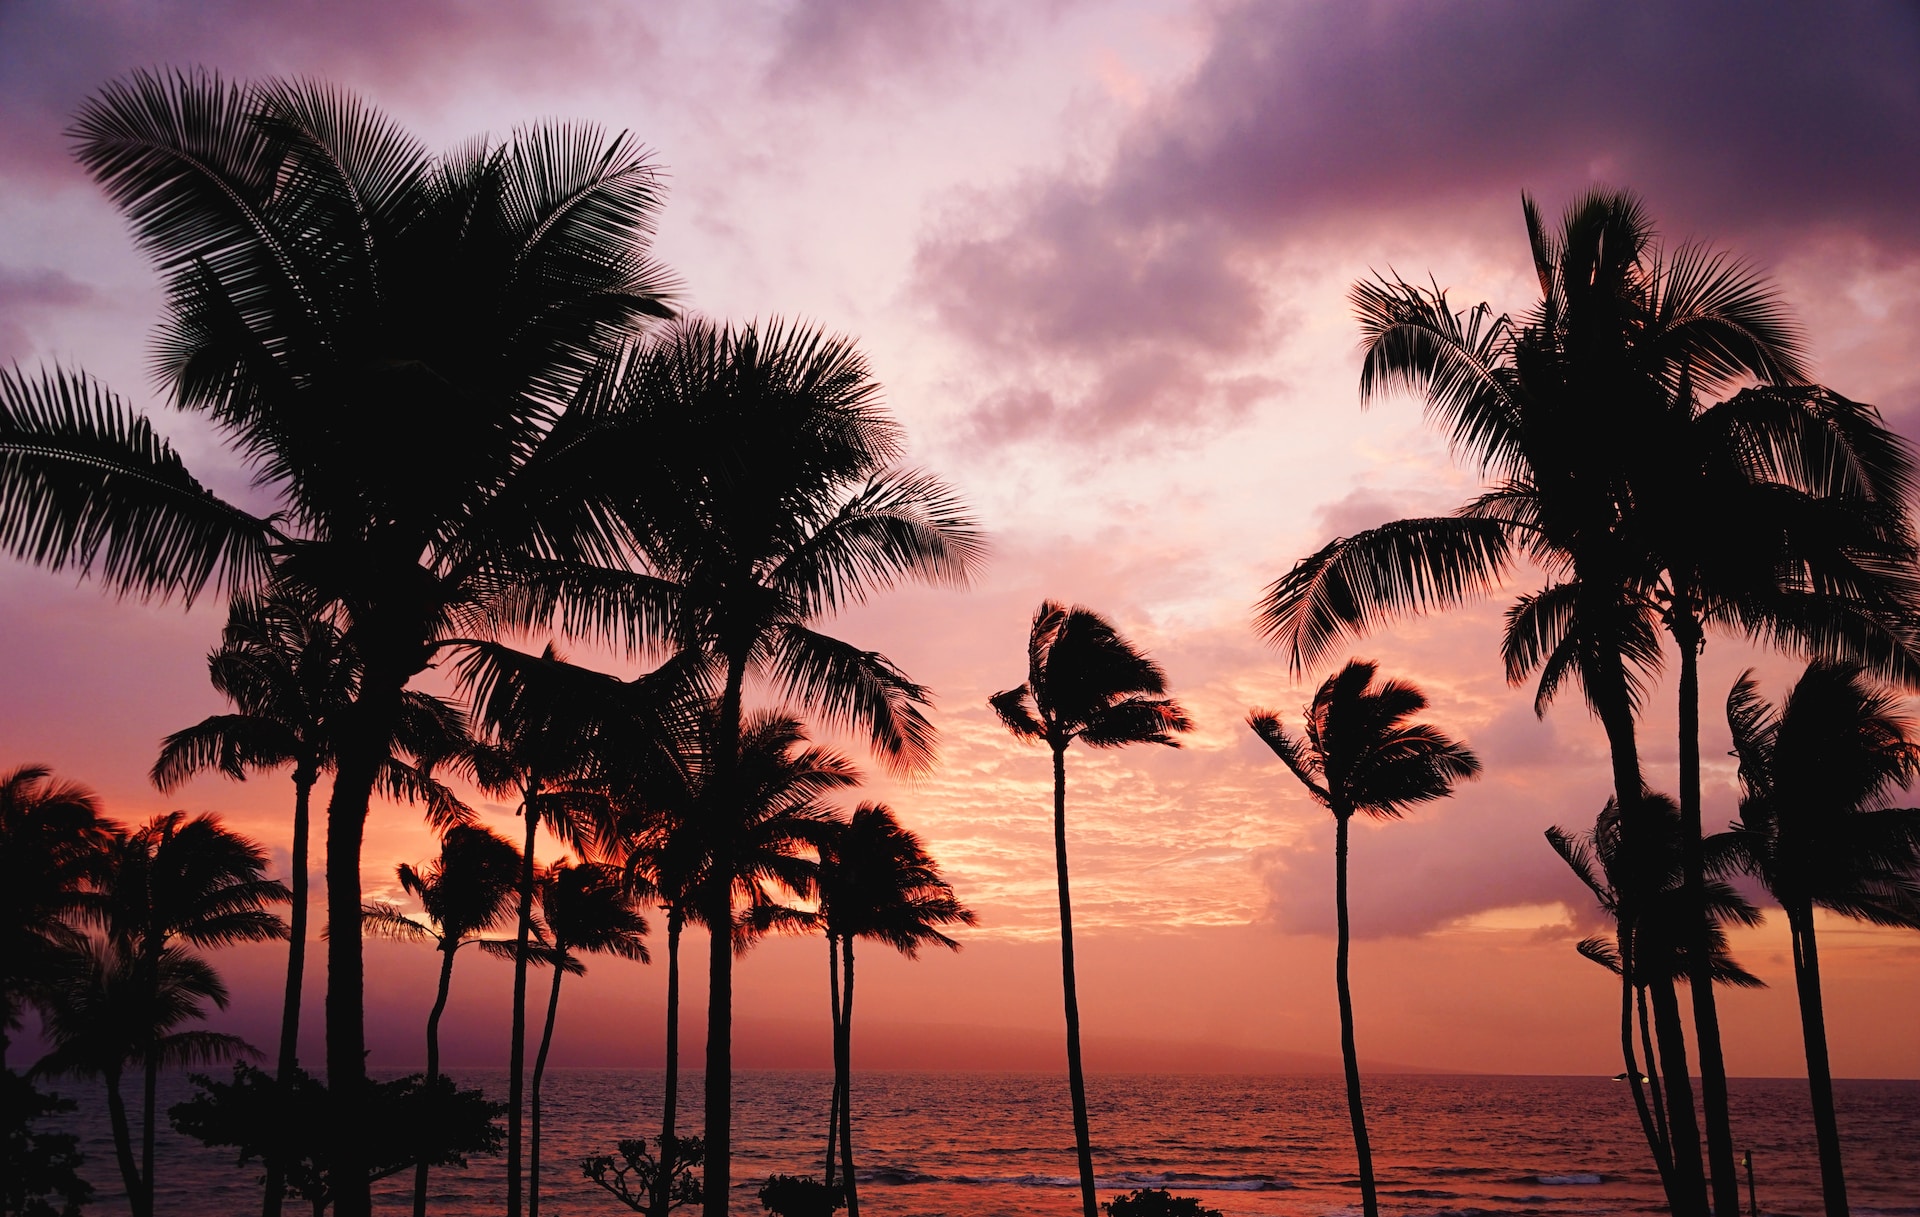 Visite Hawaii: disfrute de la belleza natural y los resorts de lujo.